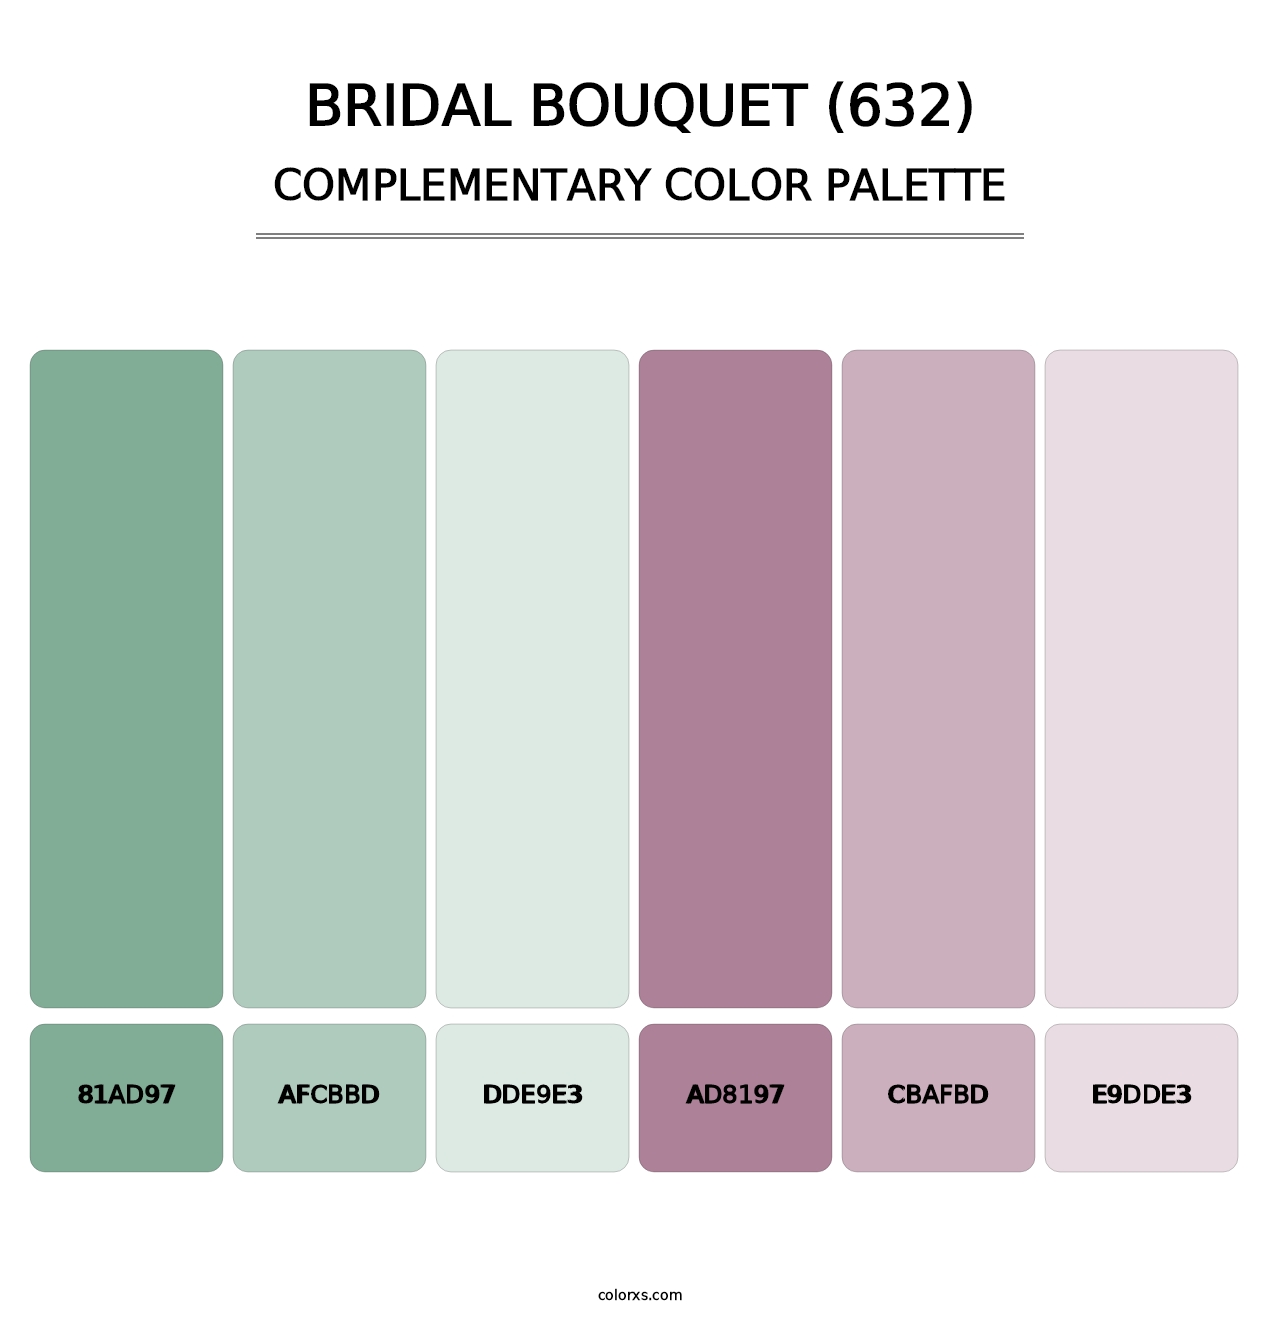 Bridal Bouquet (632) - Complementary Color Palette